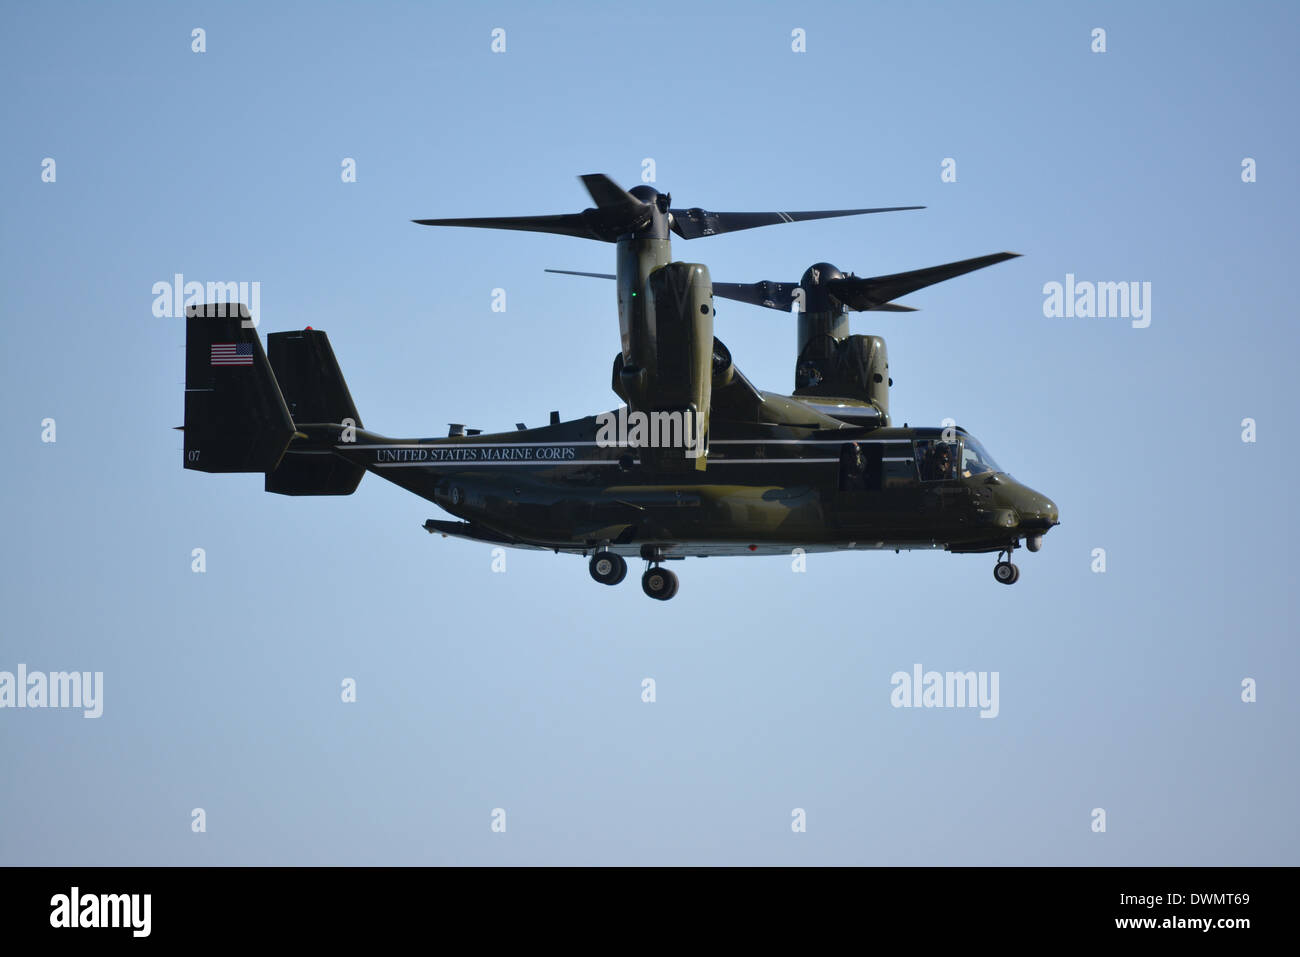 Marine Corps Osprey aircraft qui fait partie du président Obama's Marine Un détail présidentielle. Banque D'Images